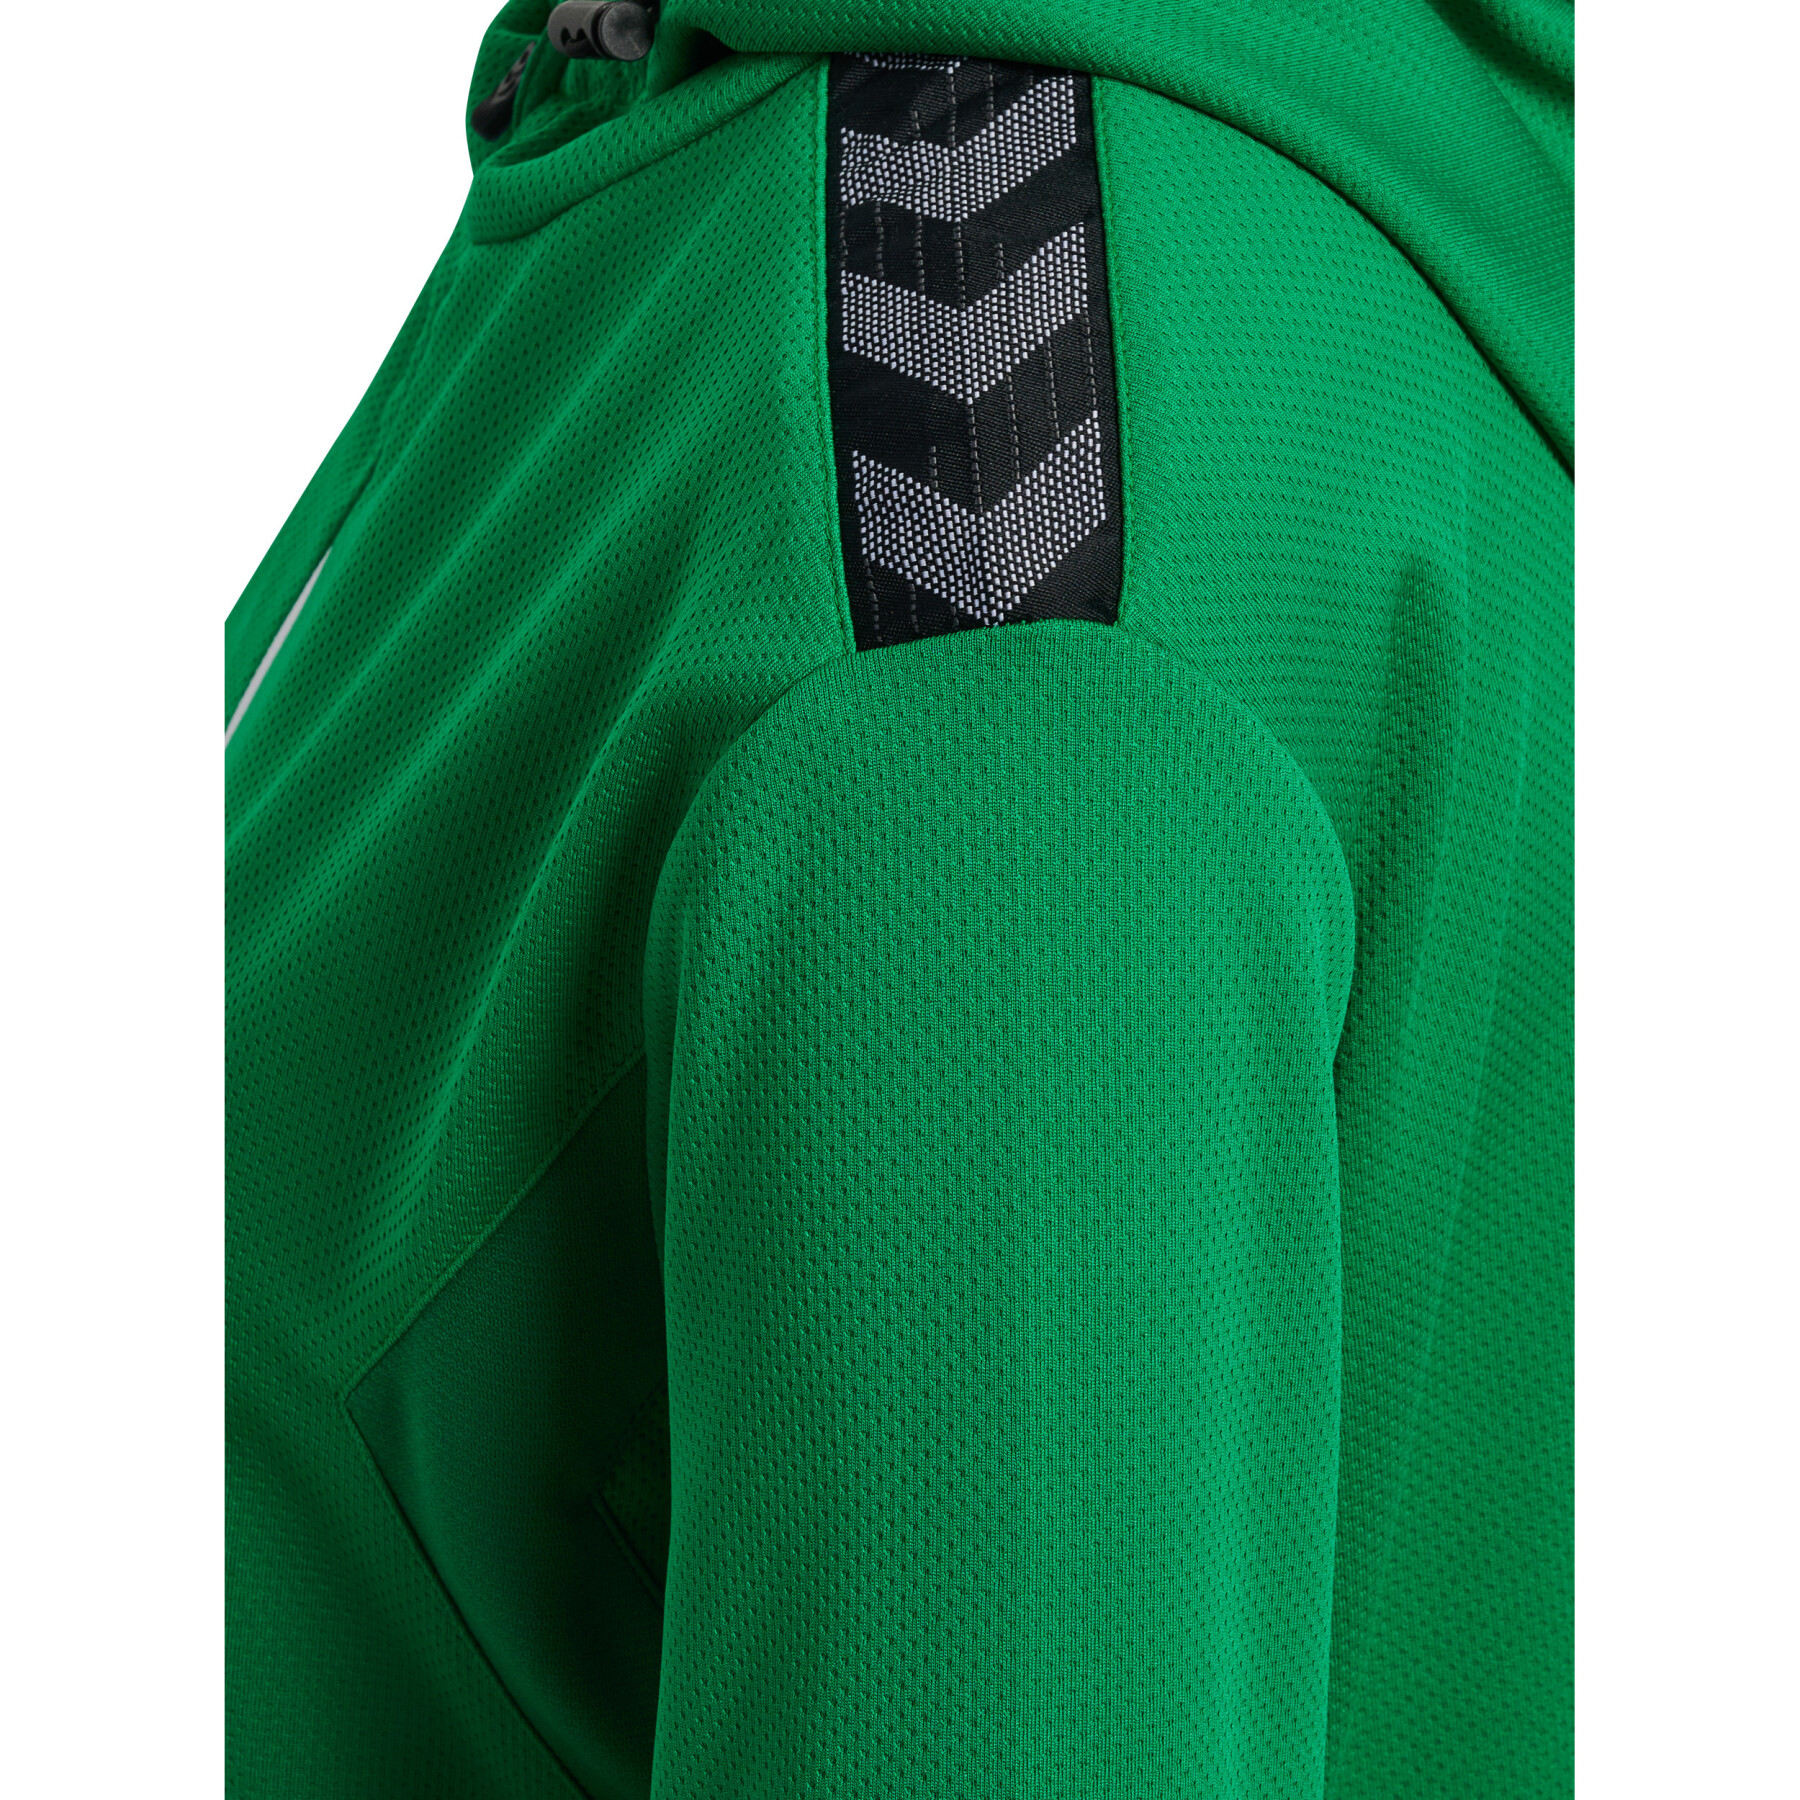 Veste de survêtement à capuche zippé polyester femme Hummel Authentic